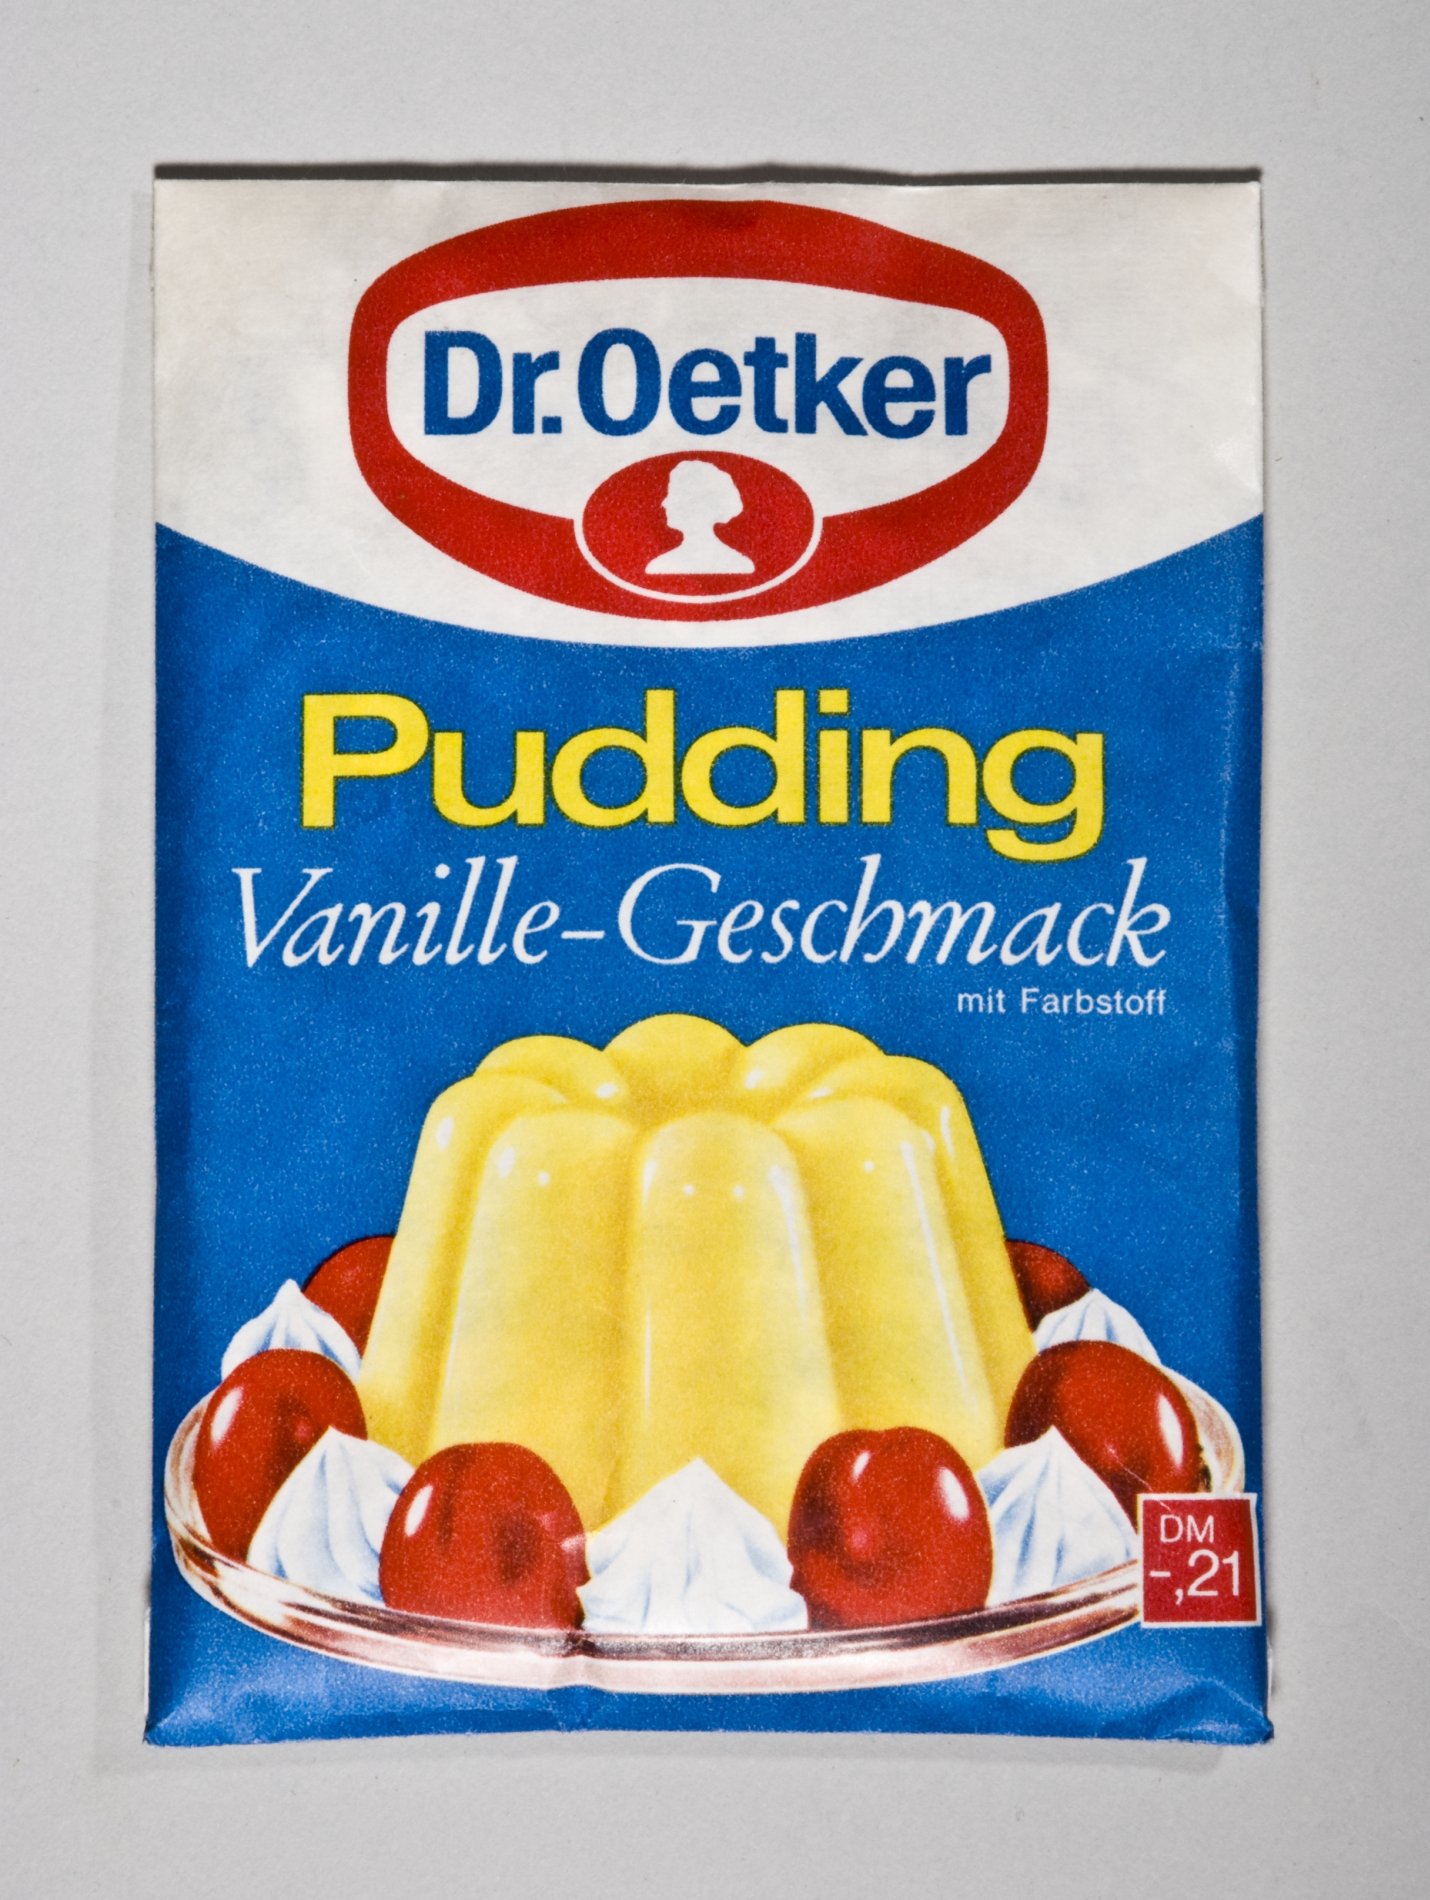 Päckchen "Pudding Vanille-Geschmack" von "Dr. Oetker" (Stiftung Domäne Dahlem - Landgut und Museum, Weiternutzung nur mit Genehmigung des Museums CC BY-NC-SA)